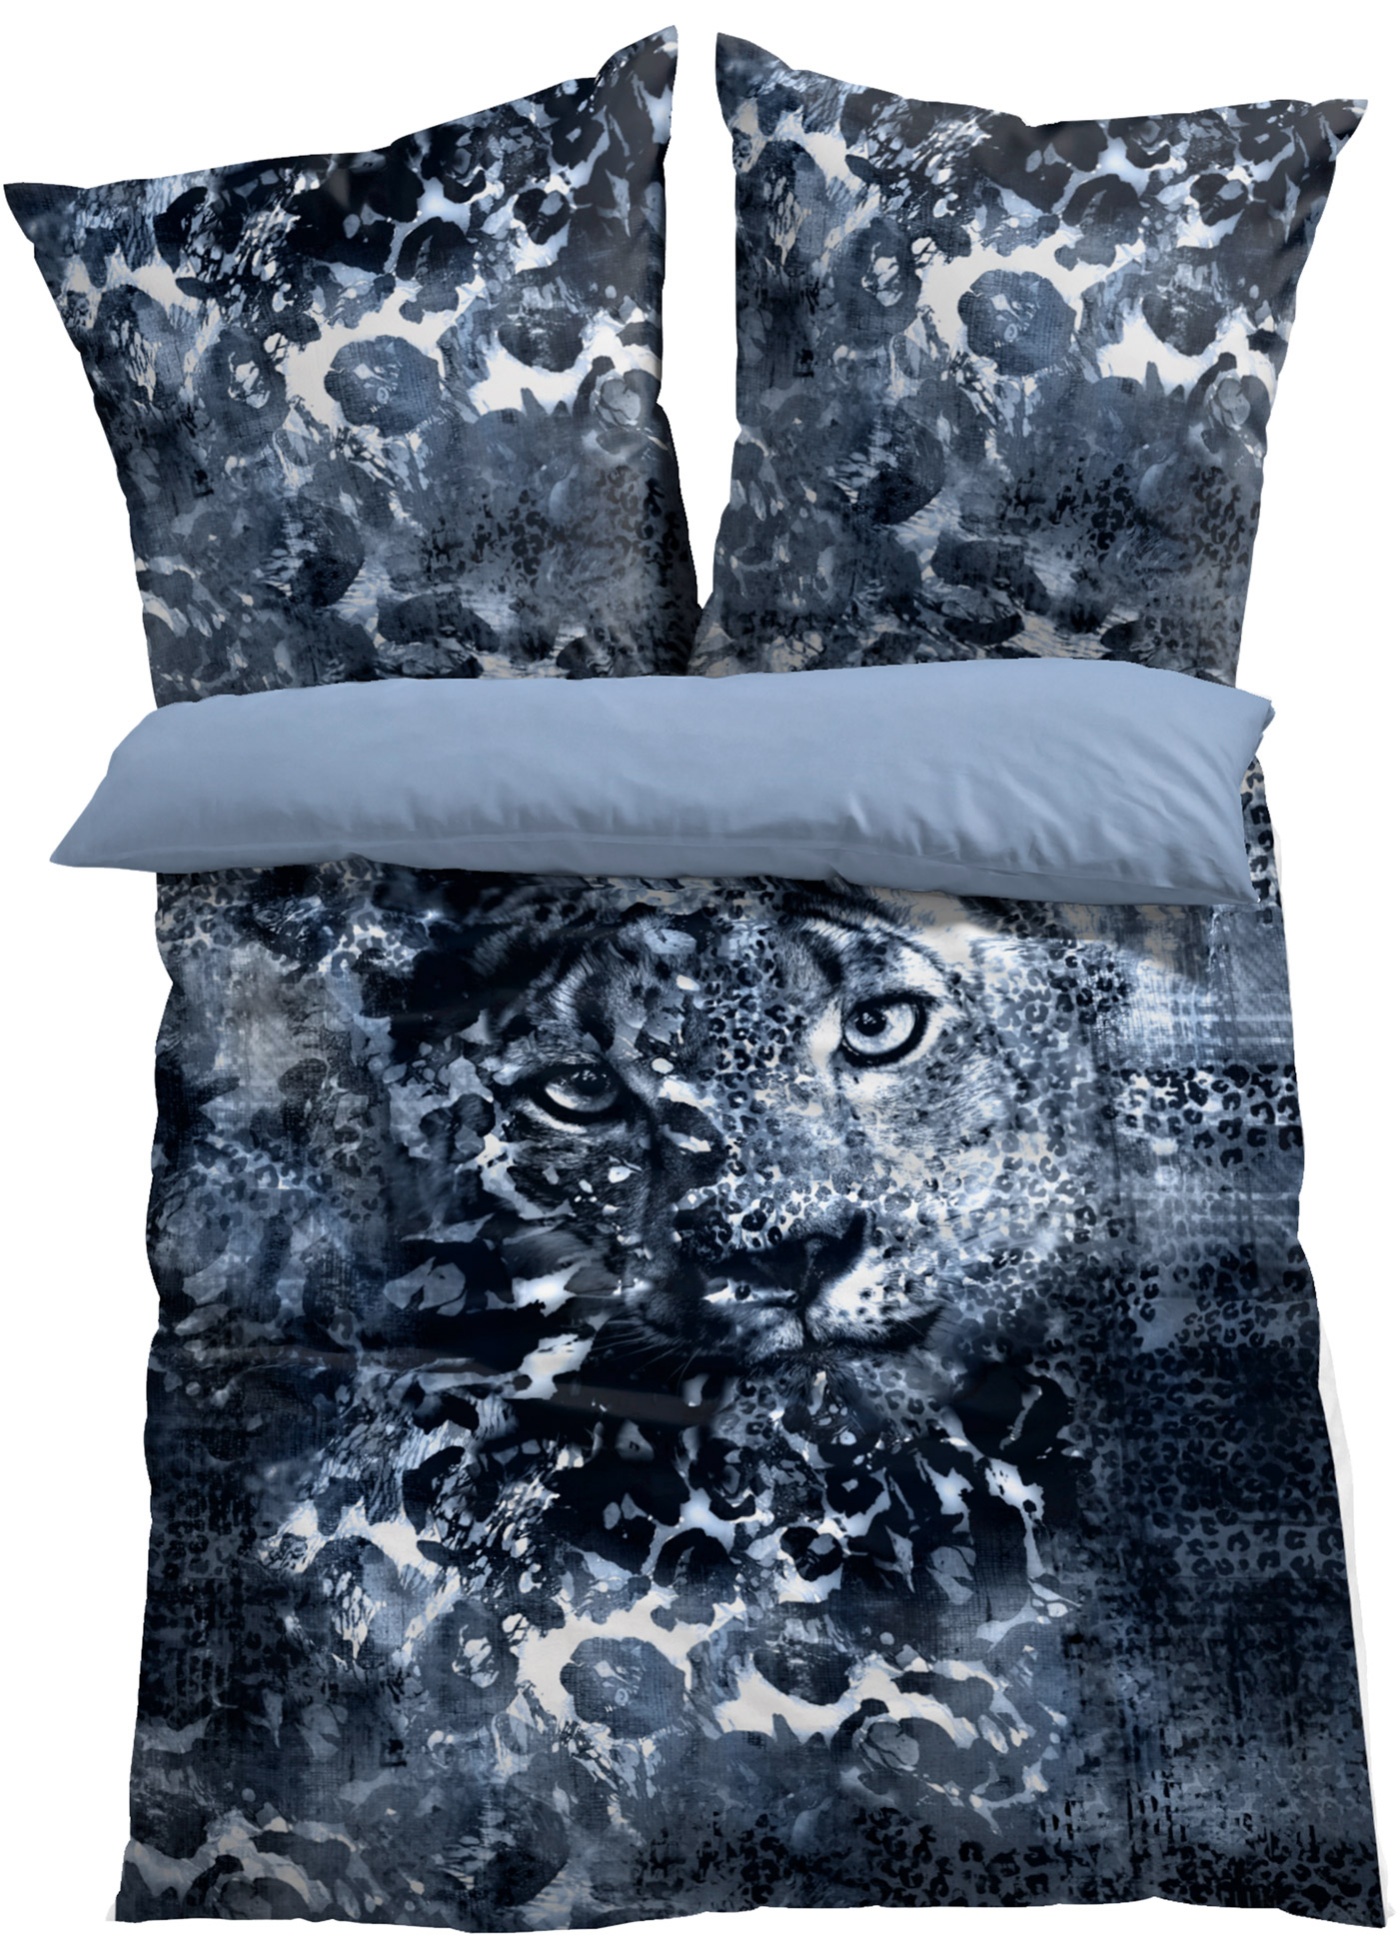 Obojstranná posteľná bielizeň s motívom divokých mačiek